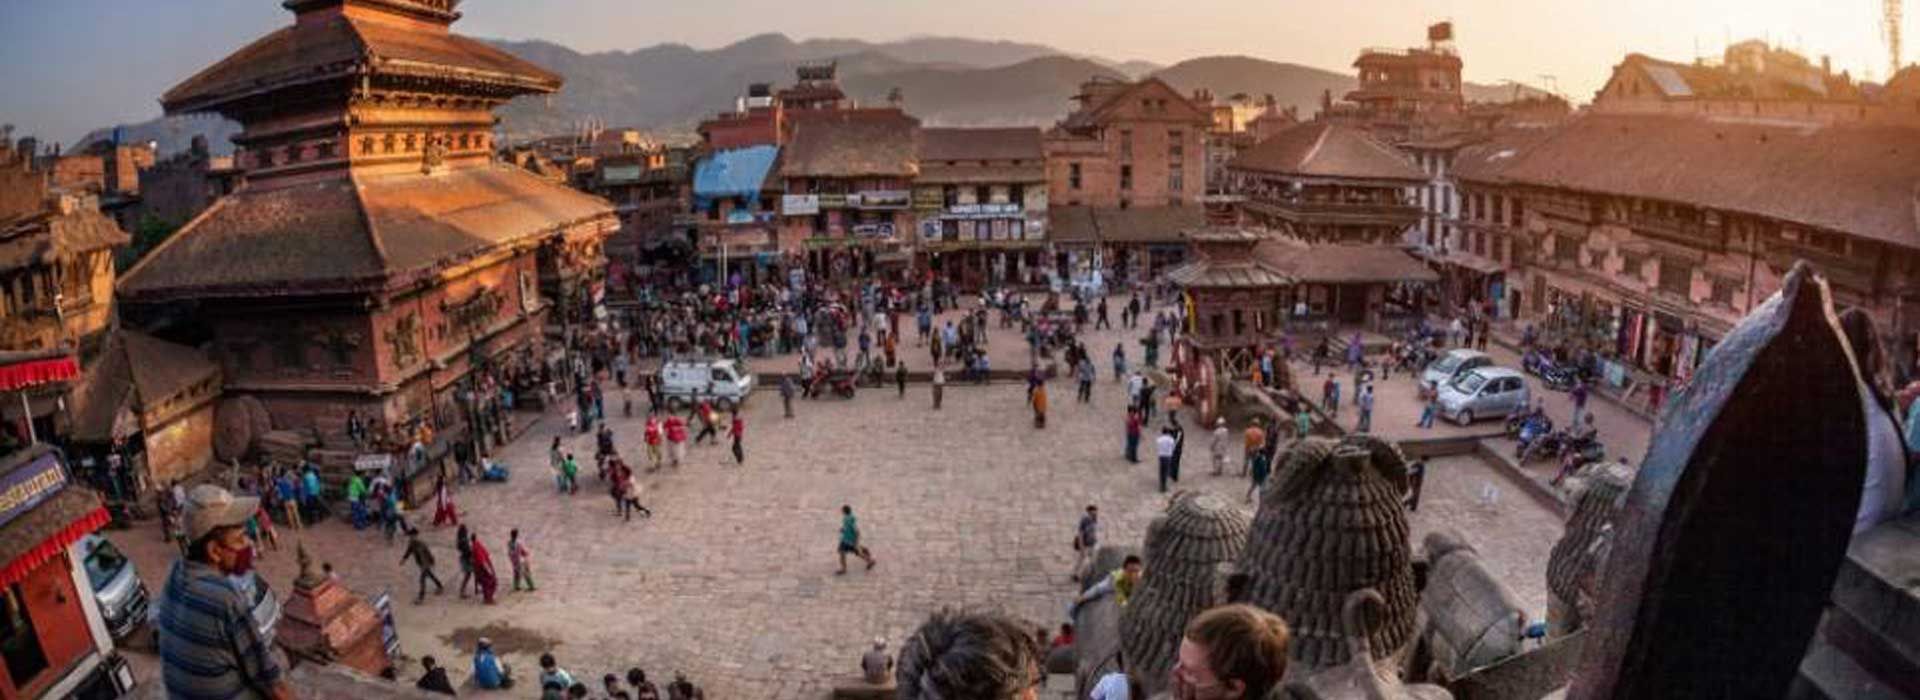 Νεπάλ "Η Μέκκα της περιπέτειας"4